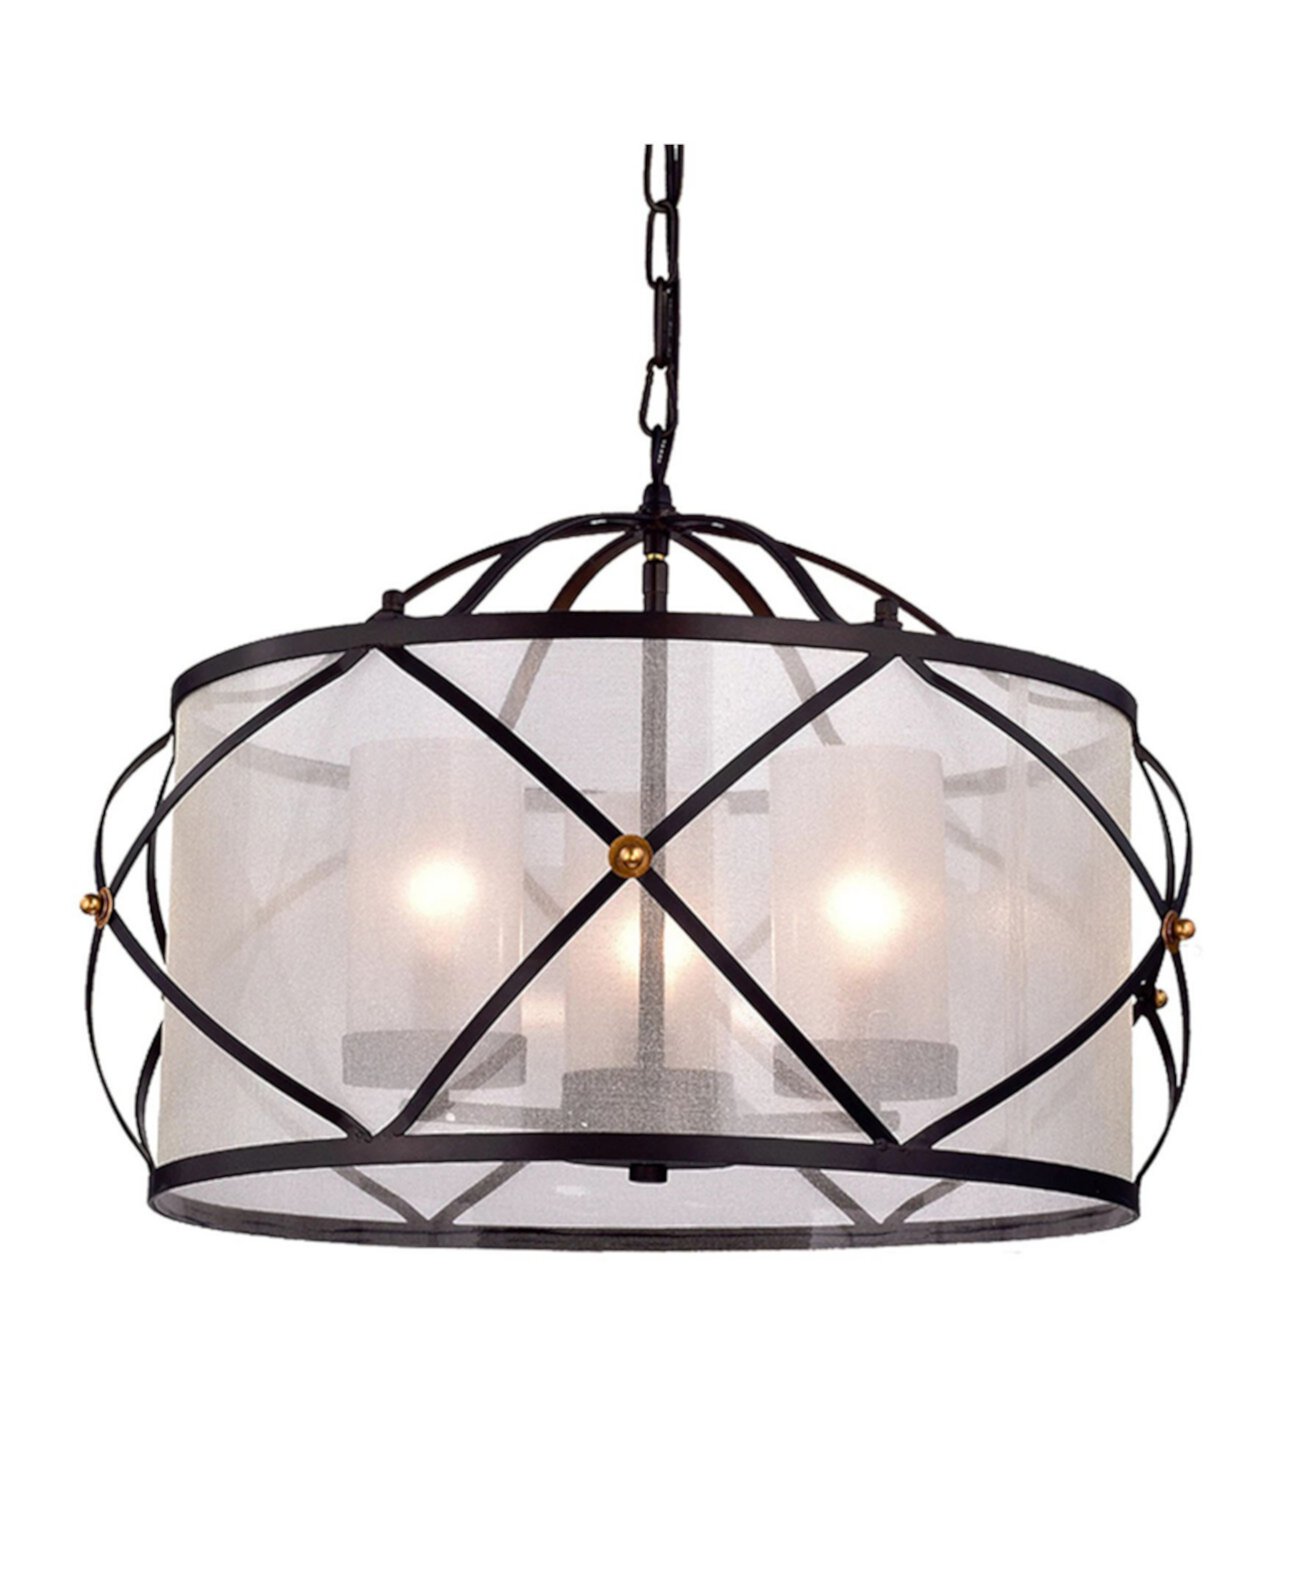 Omolara 24 "Подвесной светильник для дома с 3 лампами и комплектом светильников Home Accessories